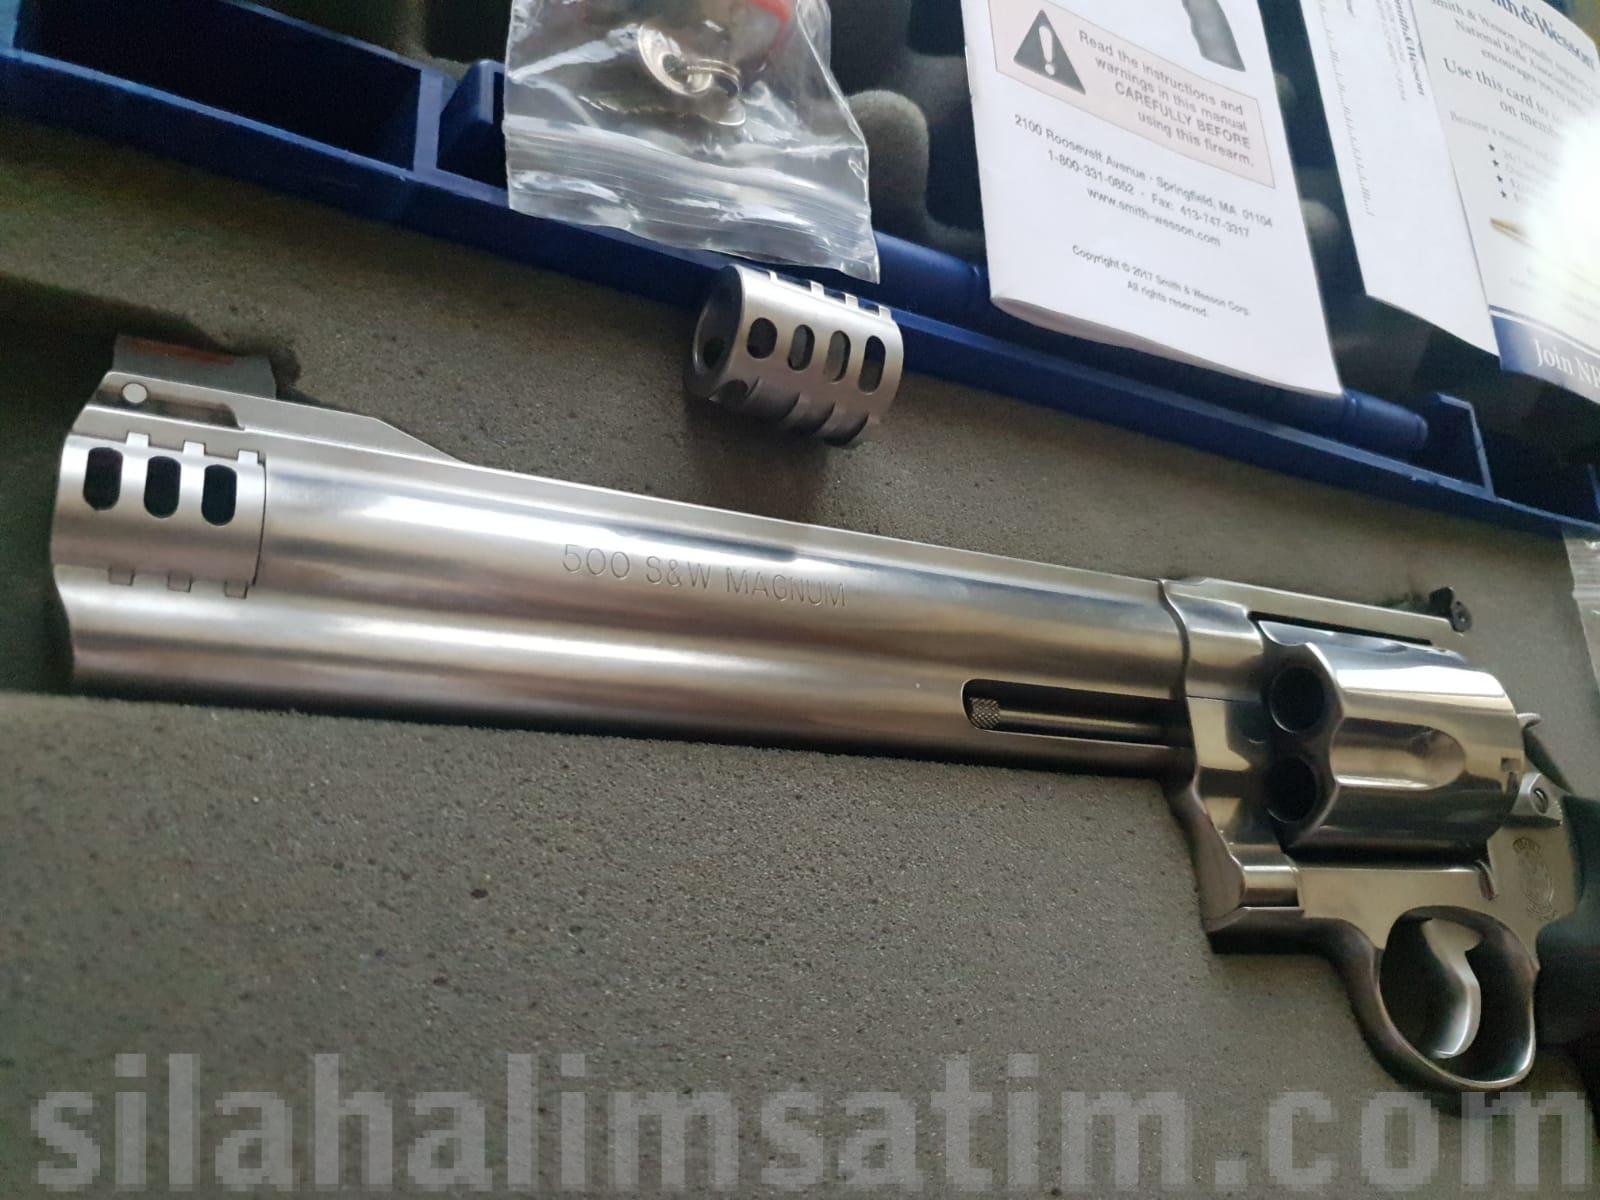 500 Smith wesson Magnum babaların silahı